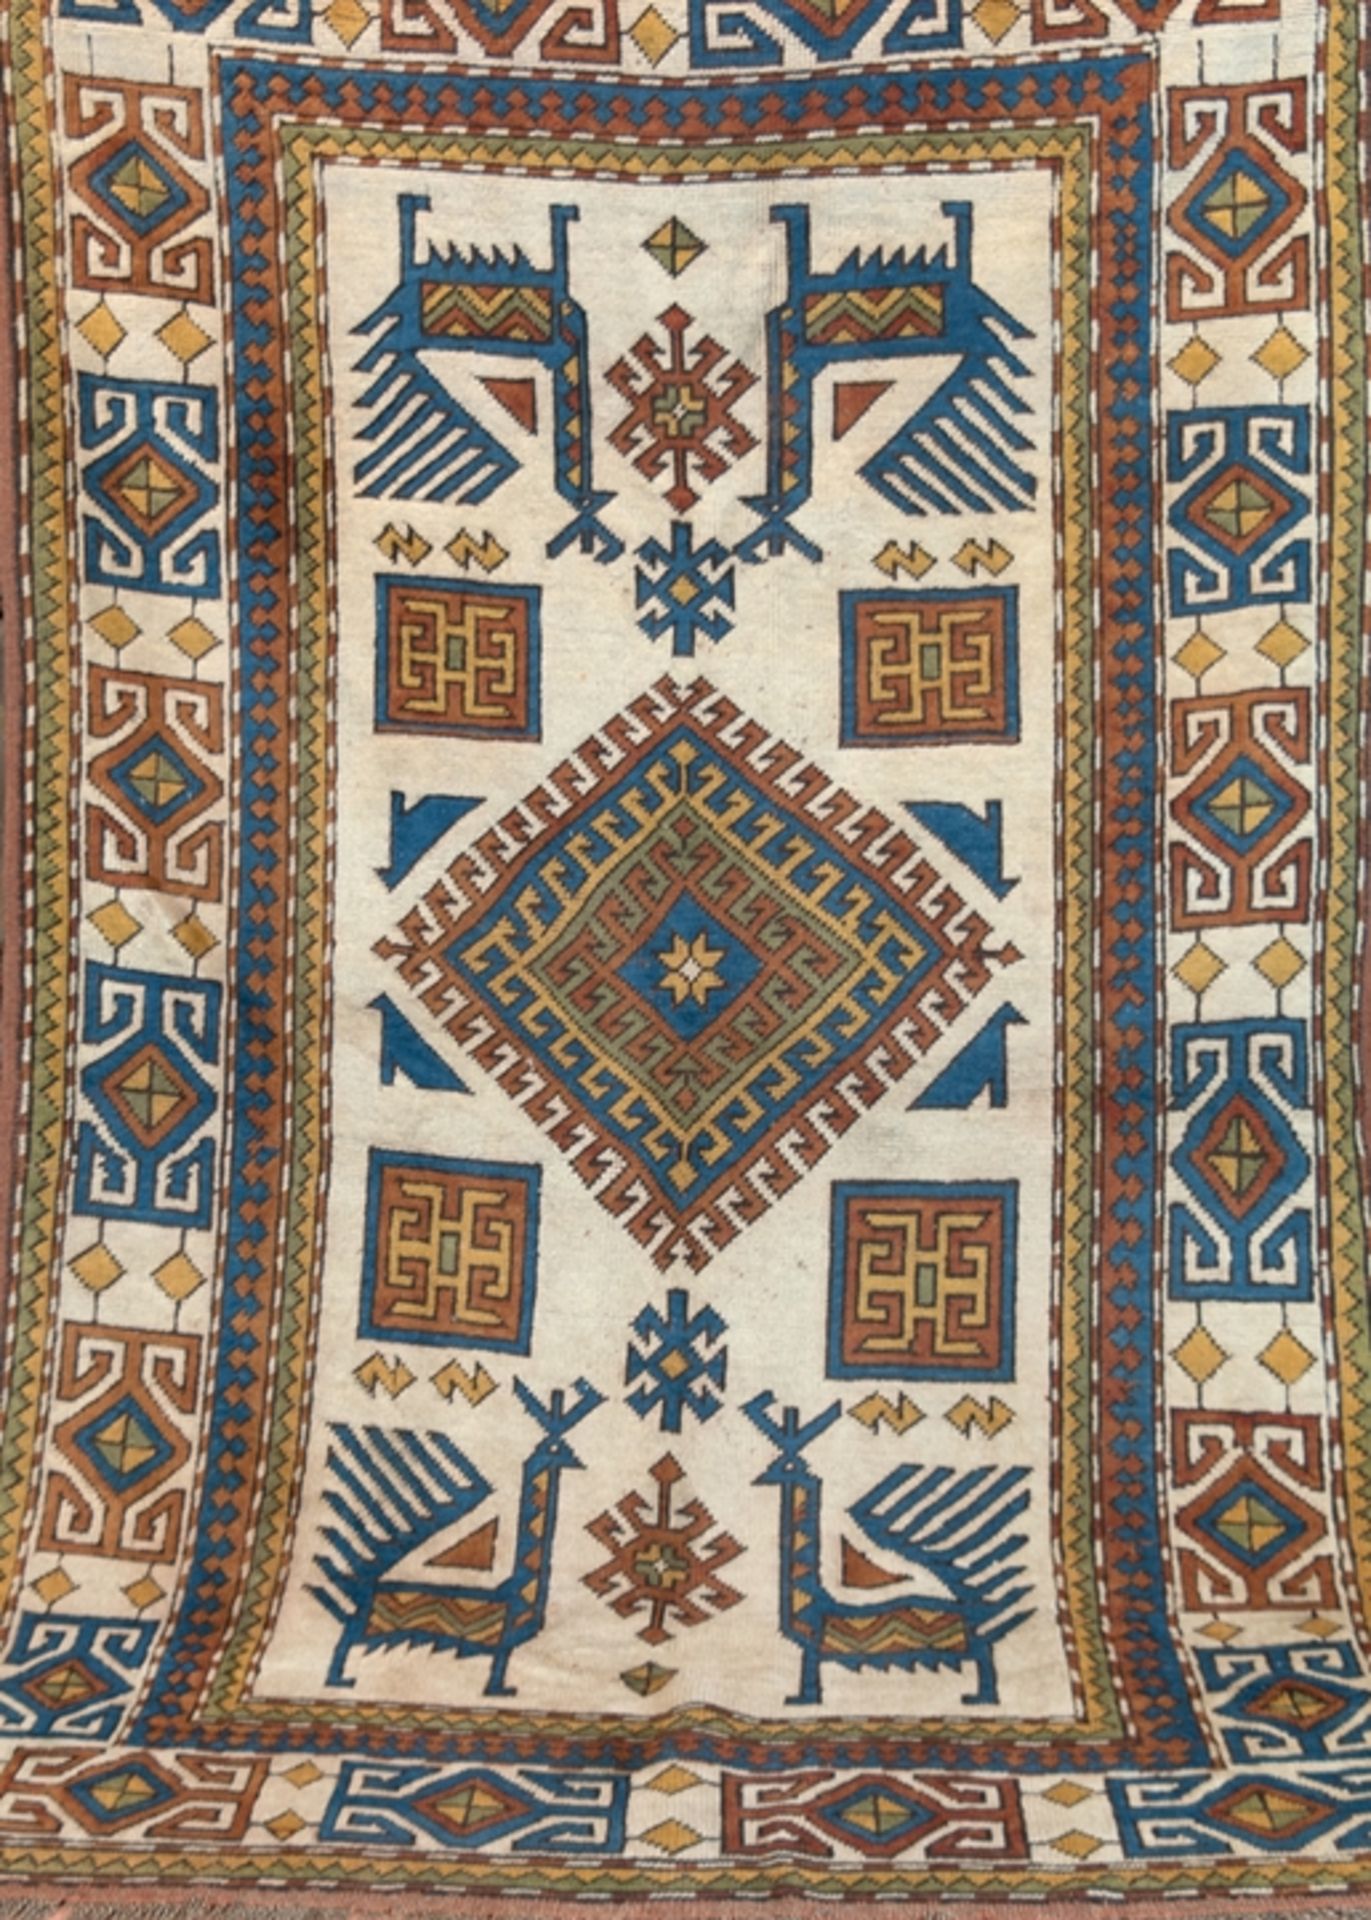 Kars, Türkei, Wolle auf Wolle, Hakenrauten, Medaillon mit Akstafa-Vögeln, hellgrundig, blau/braun g